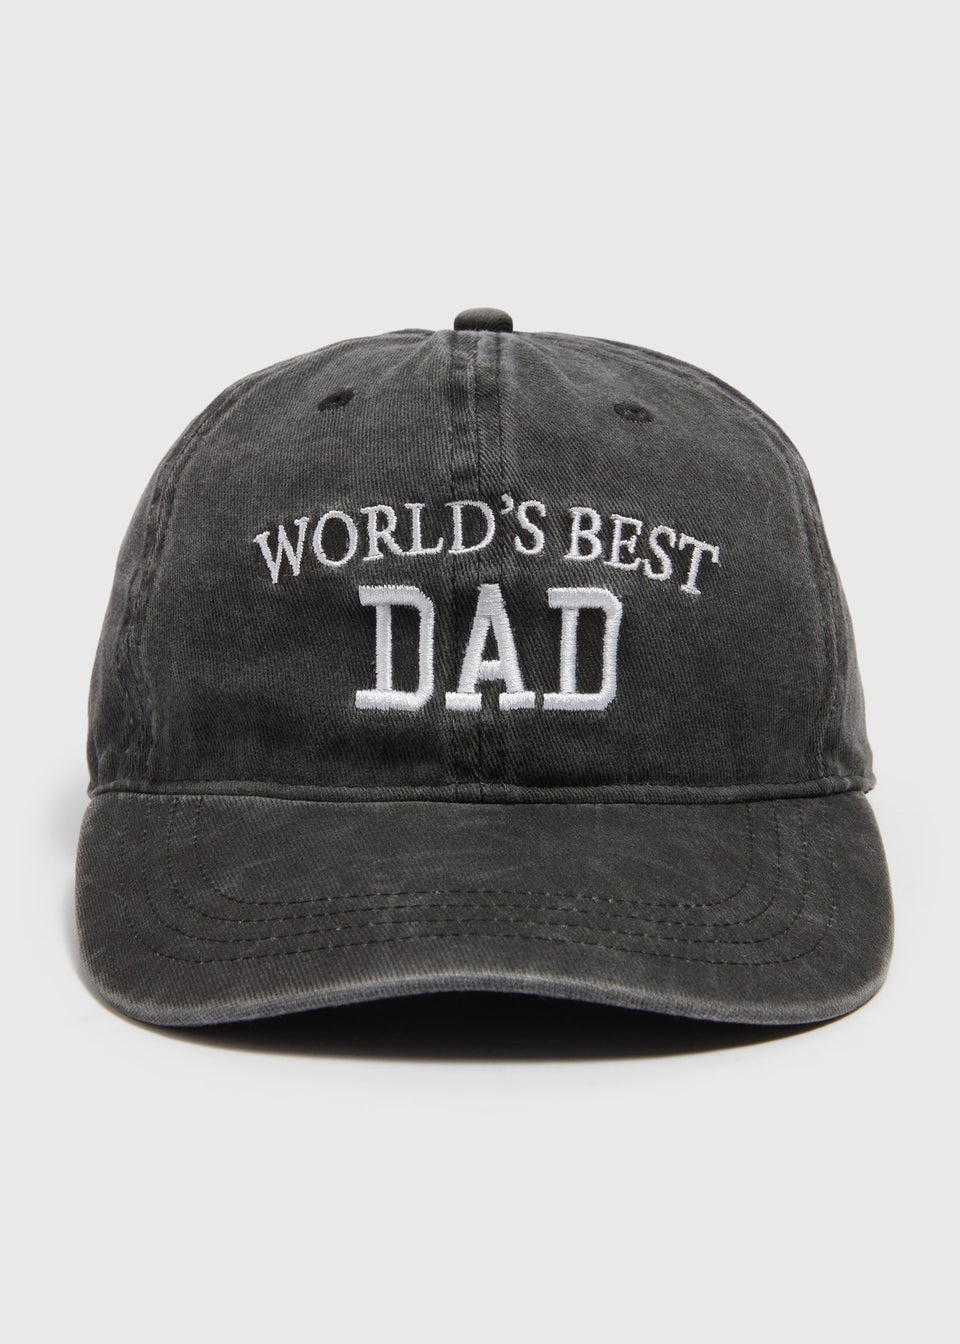 Worlds Best Dad Cap